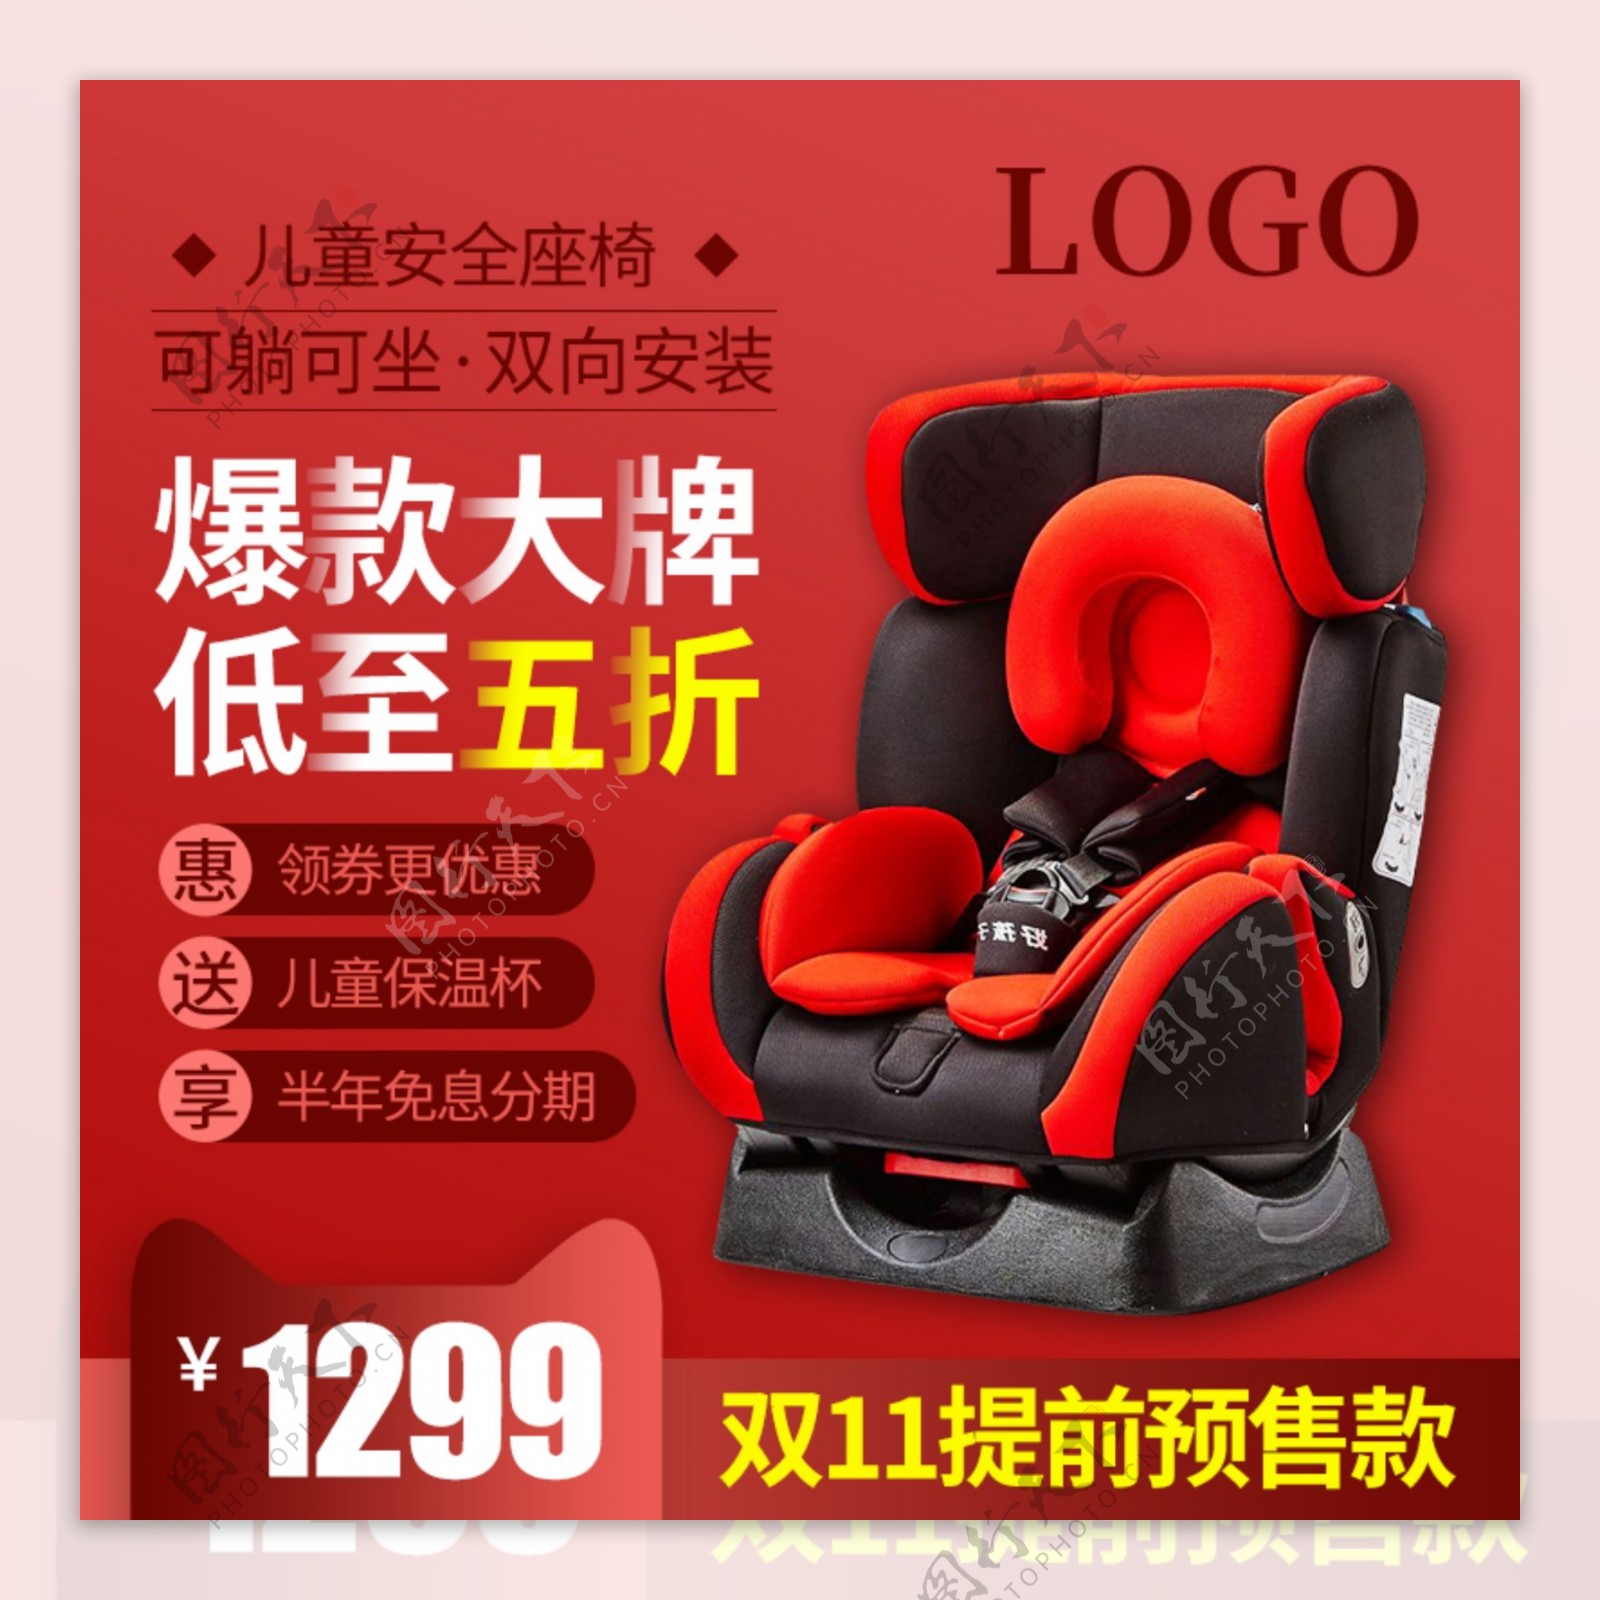 双十一双11预售母婴类儿童座椅主图直通车